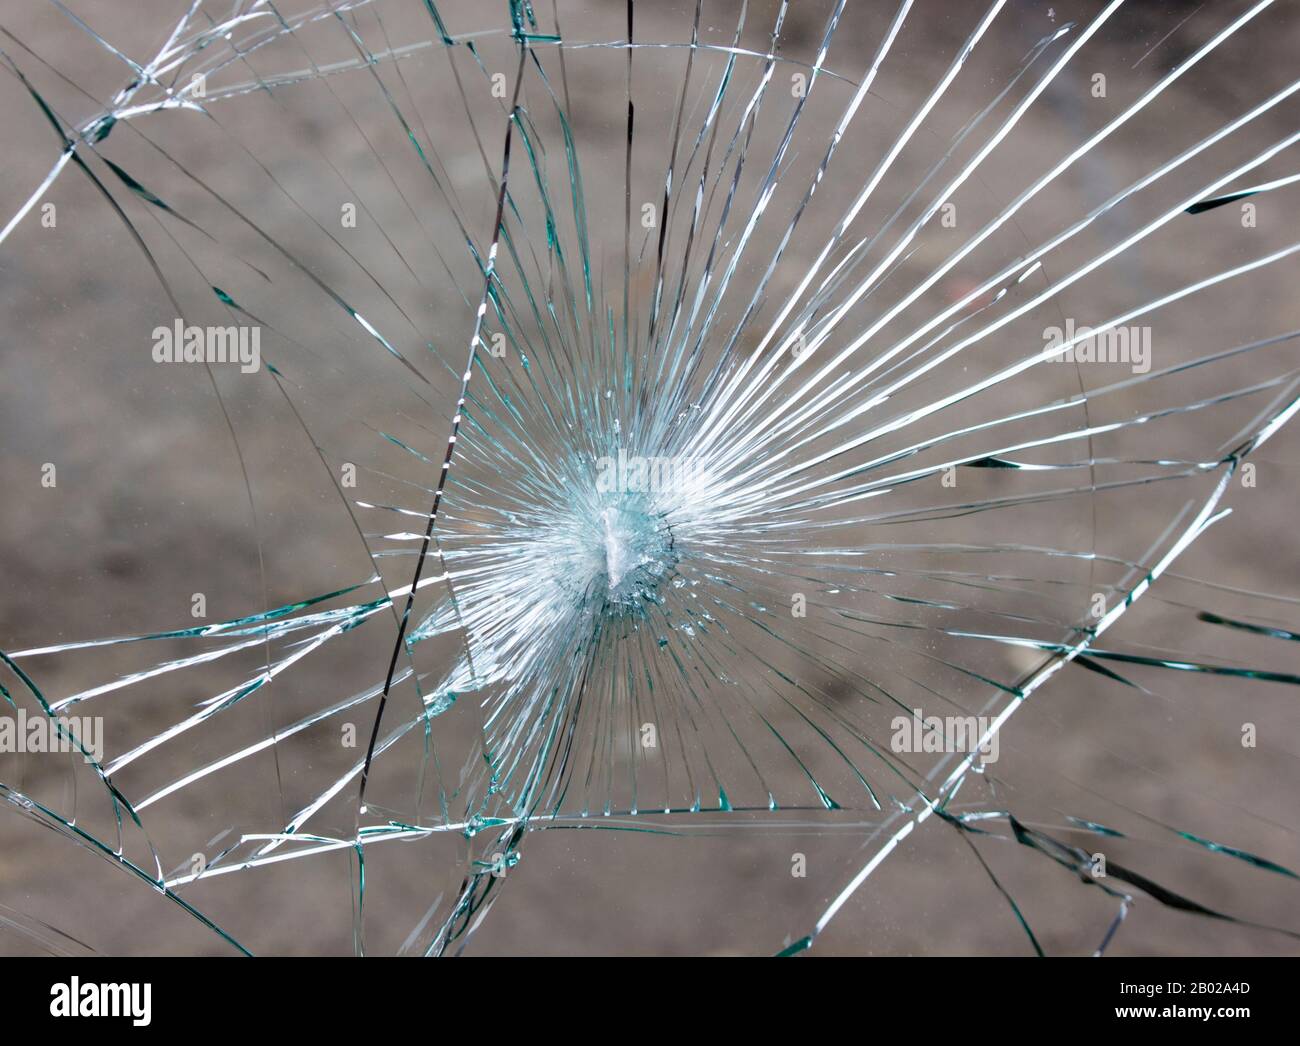 Pare-brise de voiture cassé, fissures dans le verre en raison d'un accident. Banque D'Images